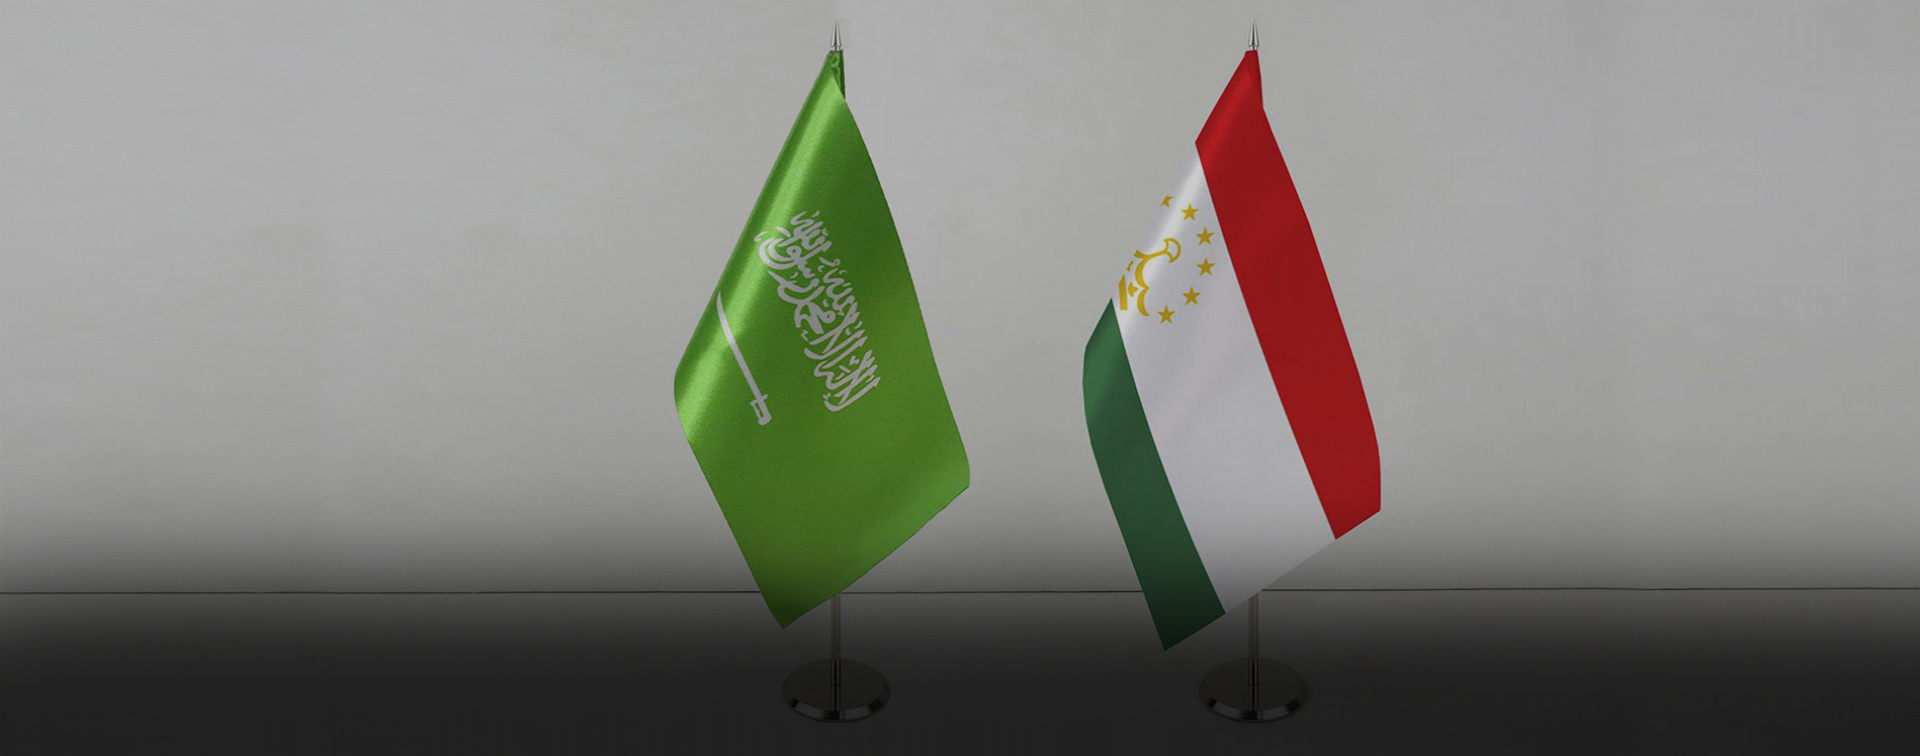 Таджикистан против саудовской аравии